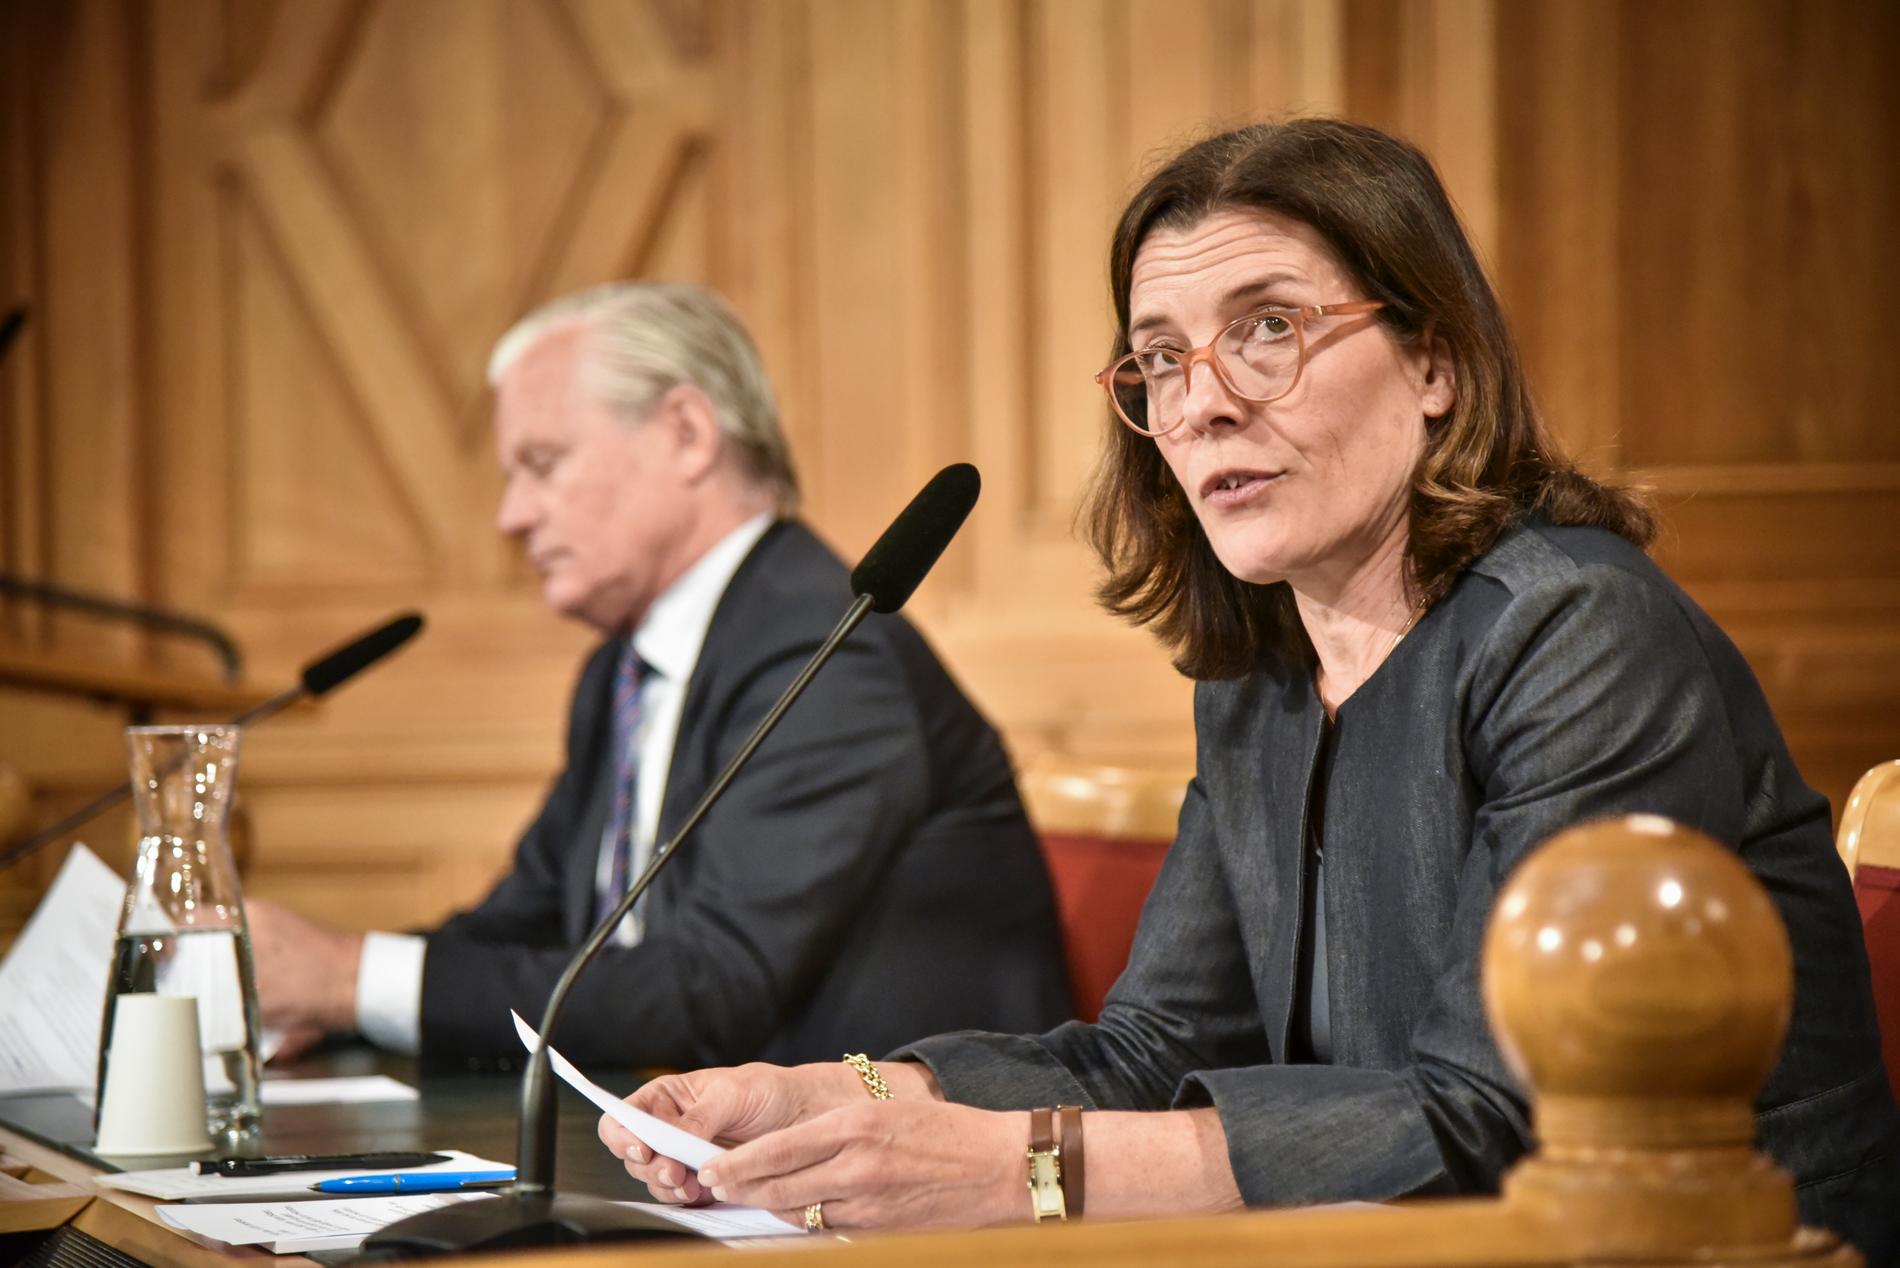 Konstitutionsutskottet (KU) anser att det förekommit flera brister i regeringens hantering av coronapandemin. Här utskottets ordförande Karin Enström (M) och vice ordförande Hans Ekström (S).